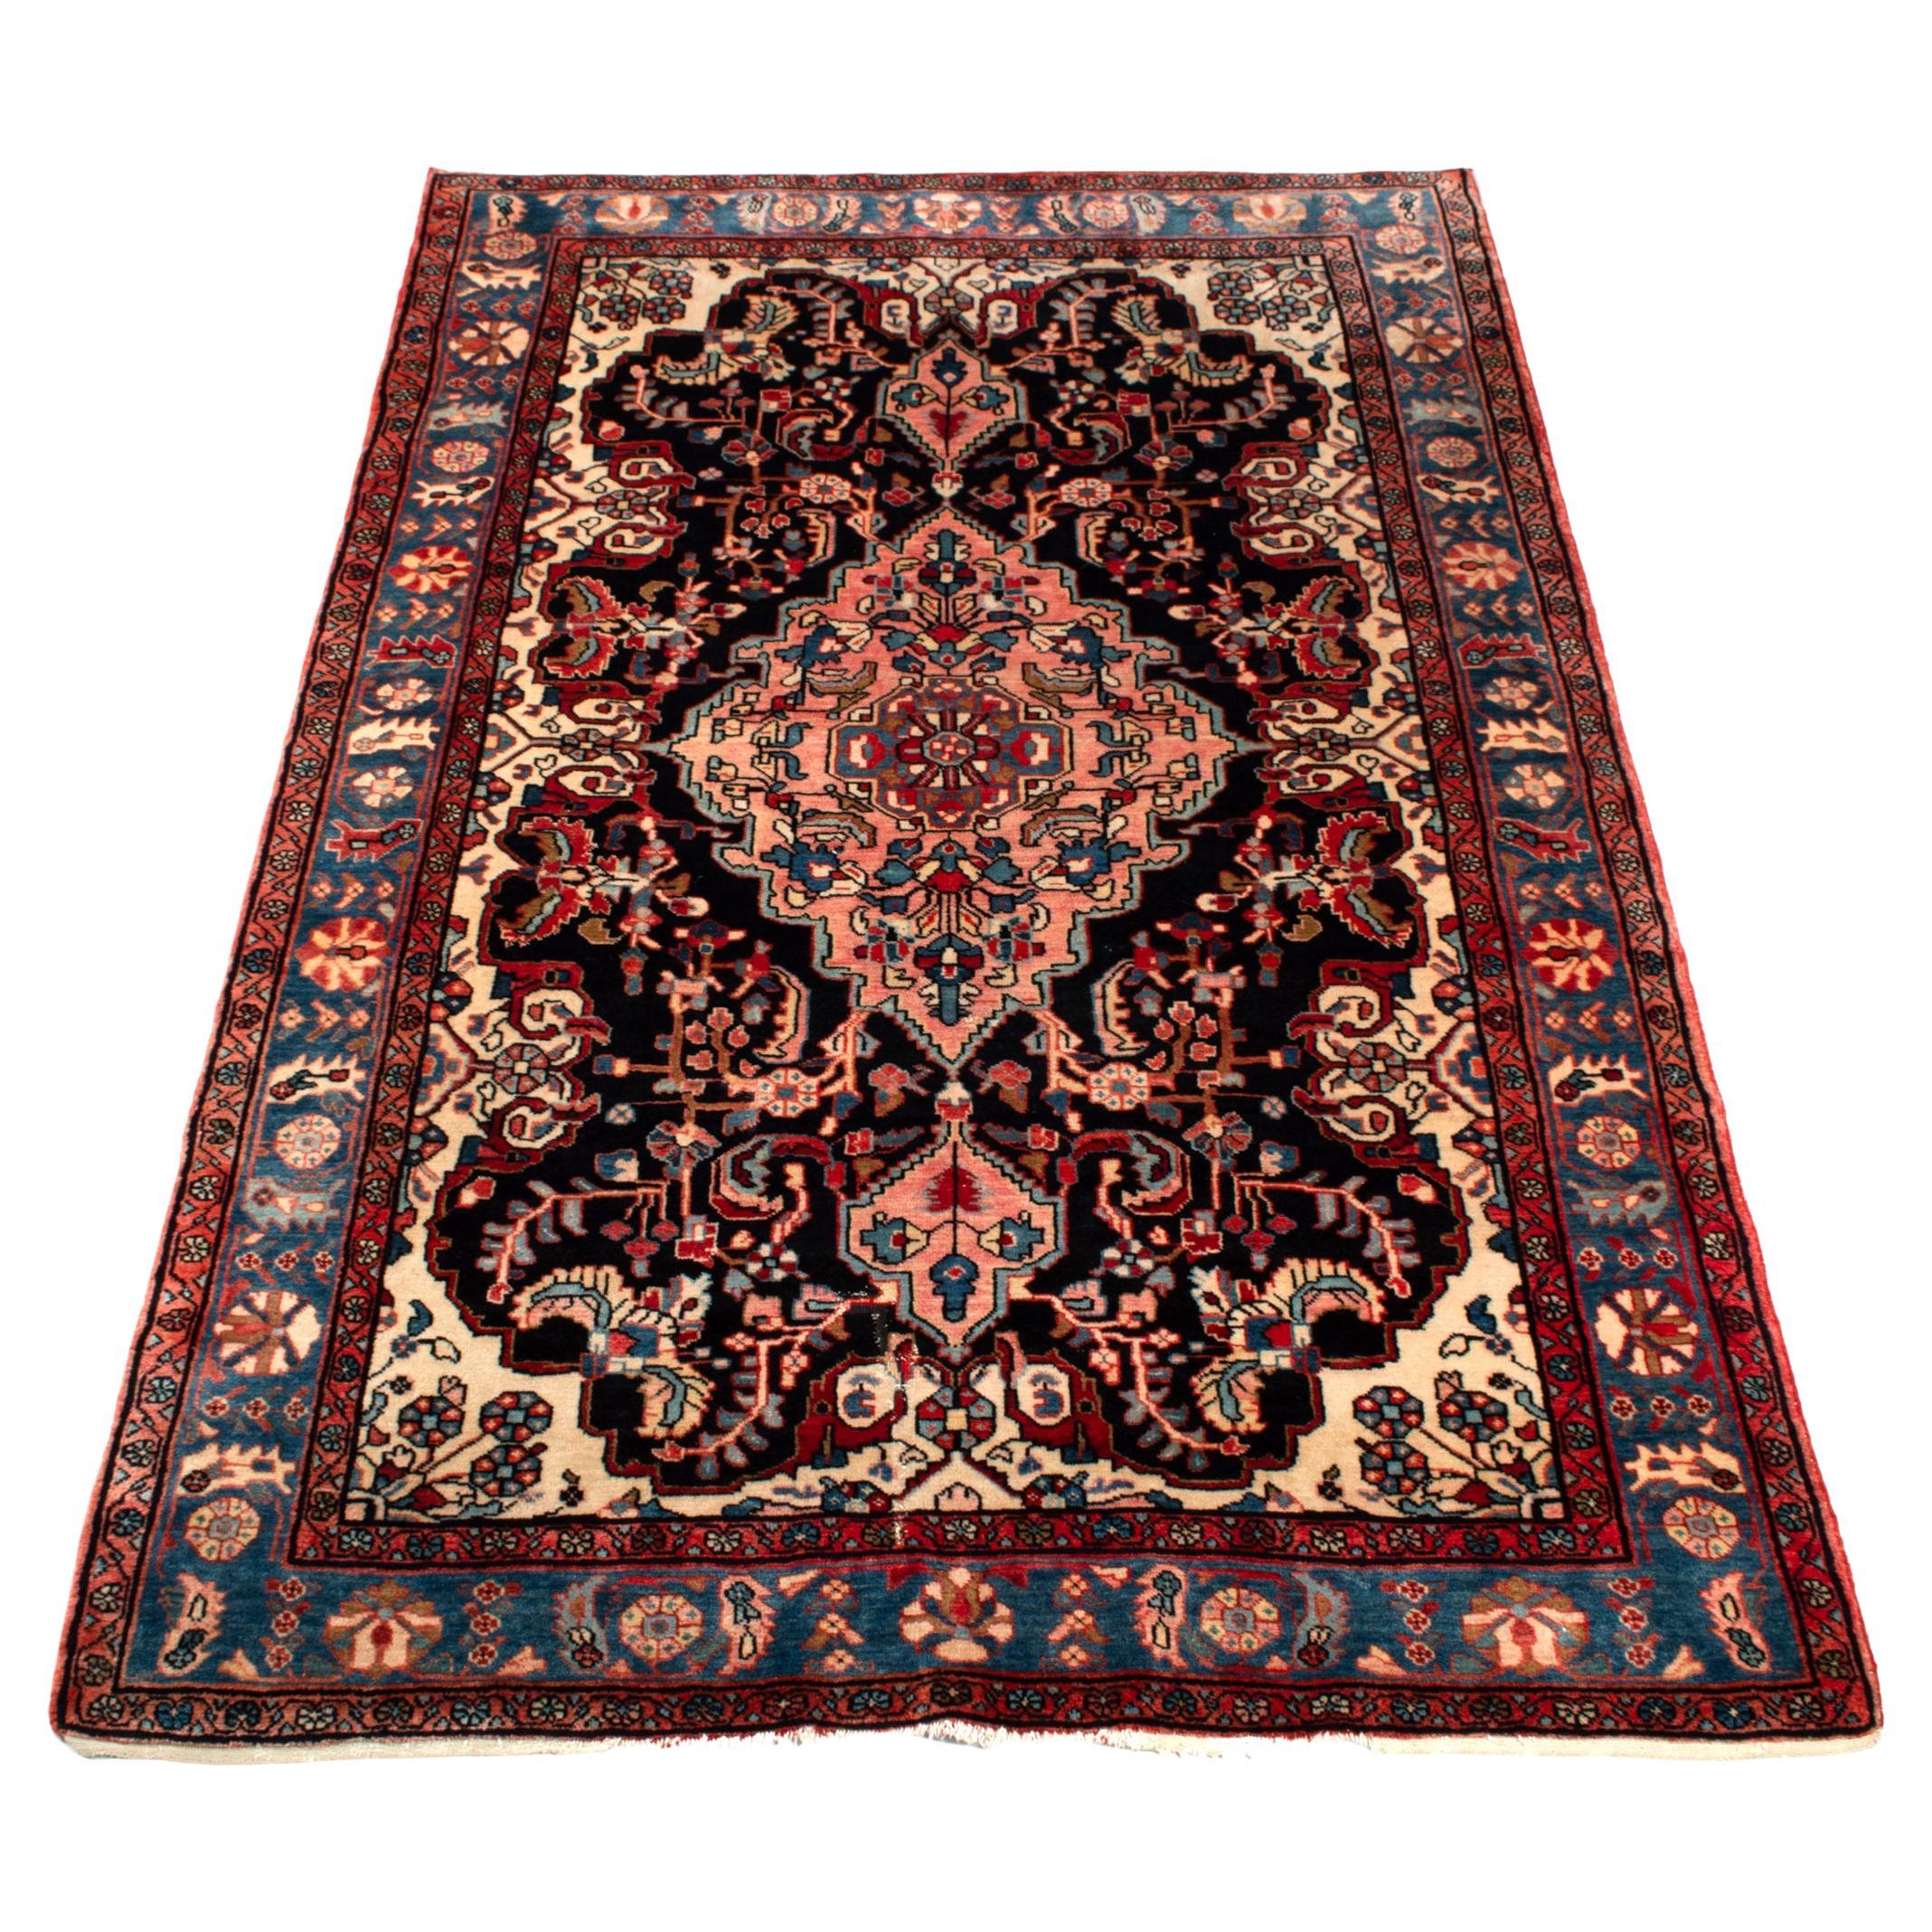 Antique Fine West Persian Carpet Rug